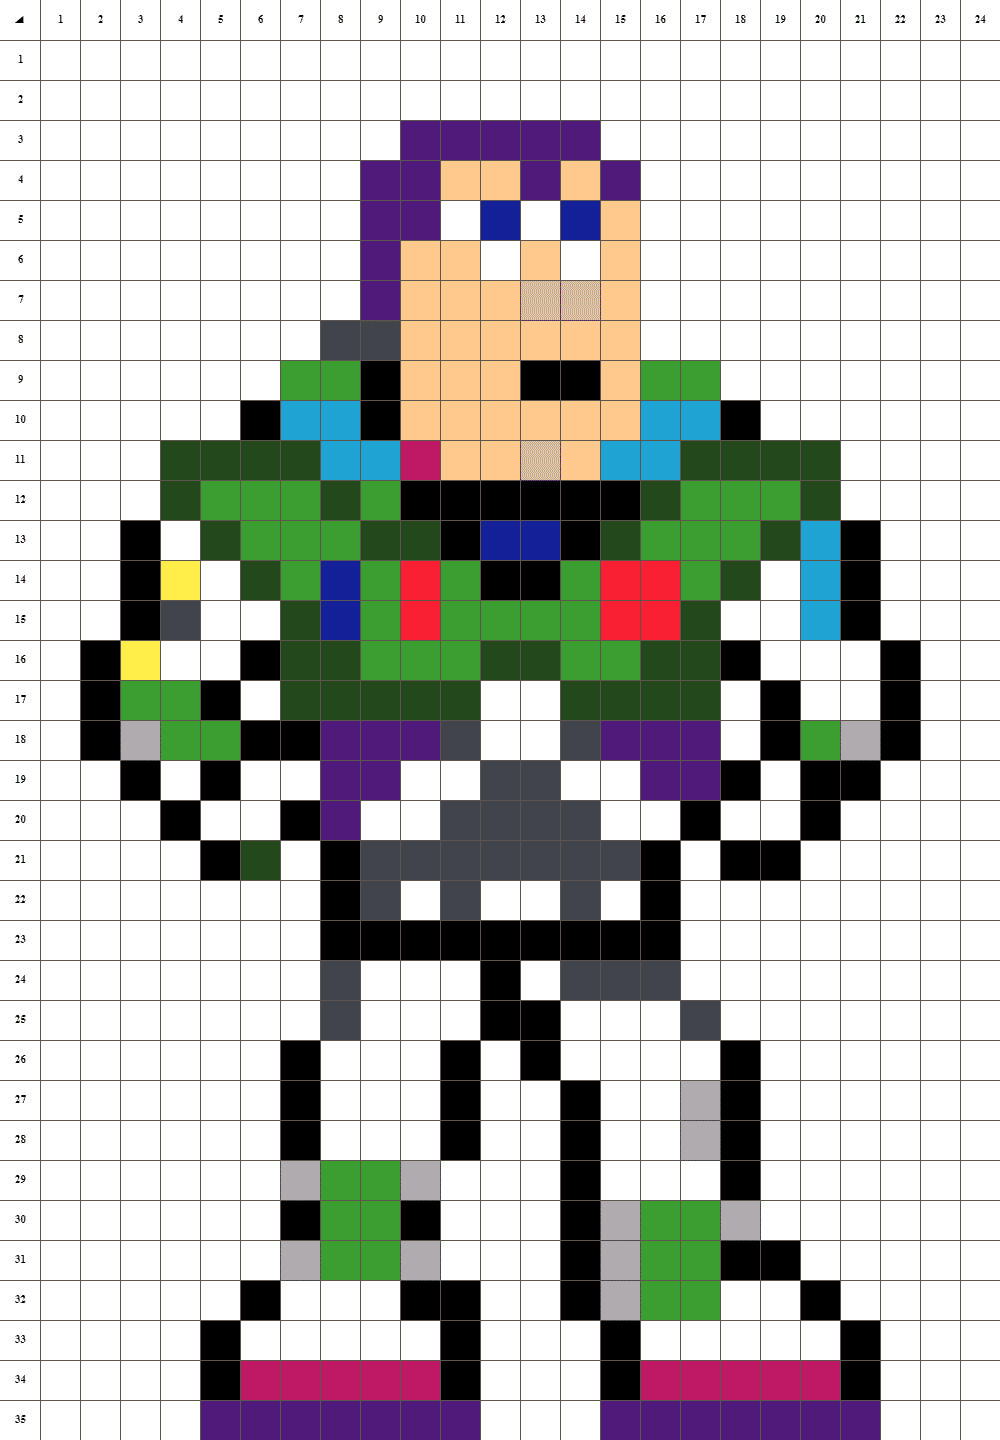 Buzz Lightyear pixel art